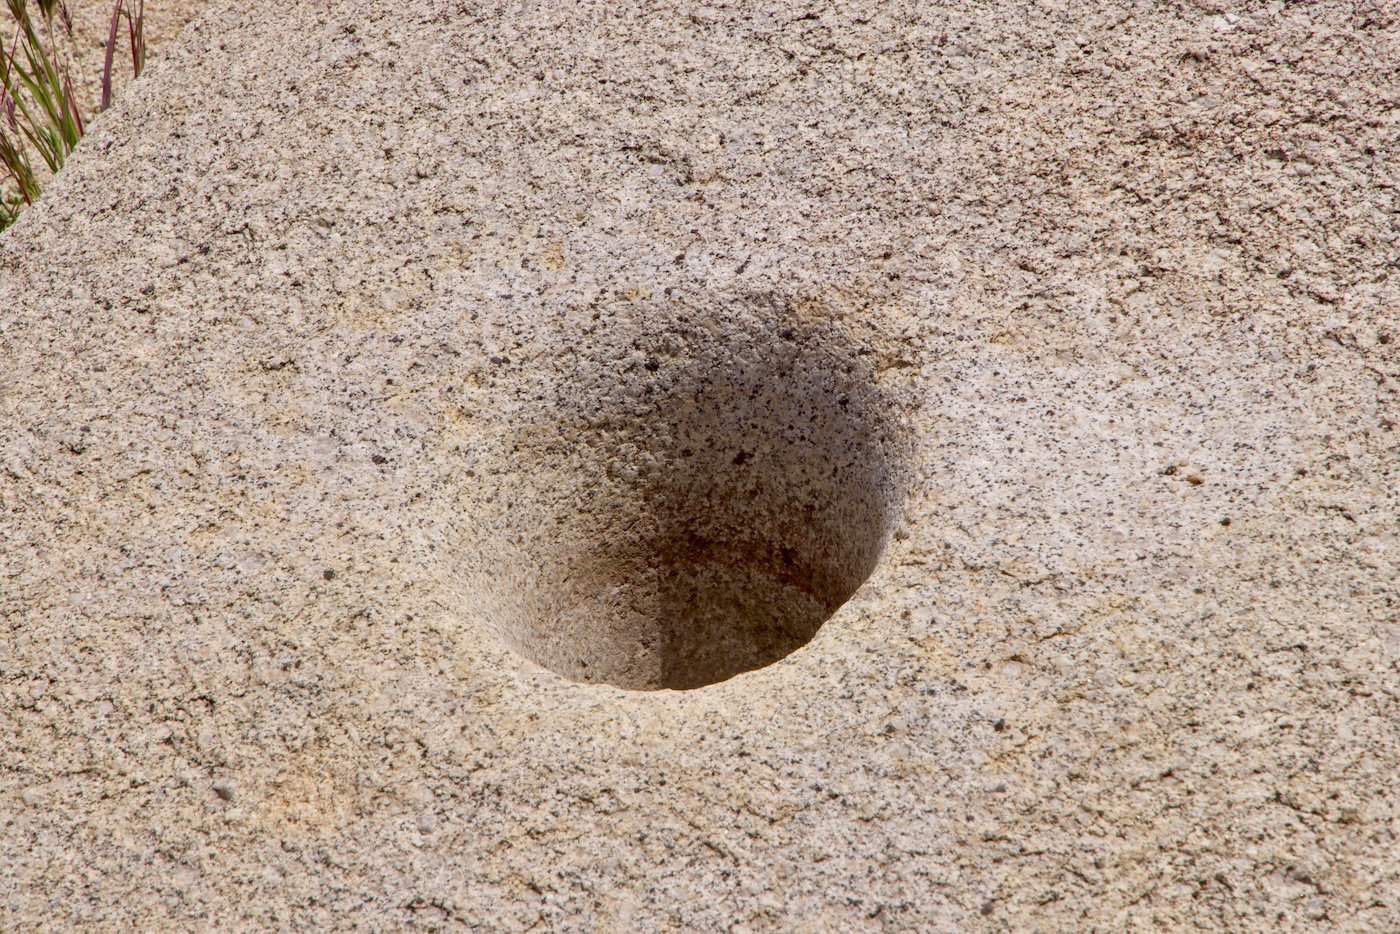 Grinding Hole - like a mortar 12" deep.